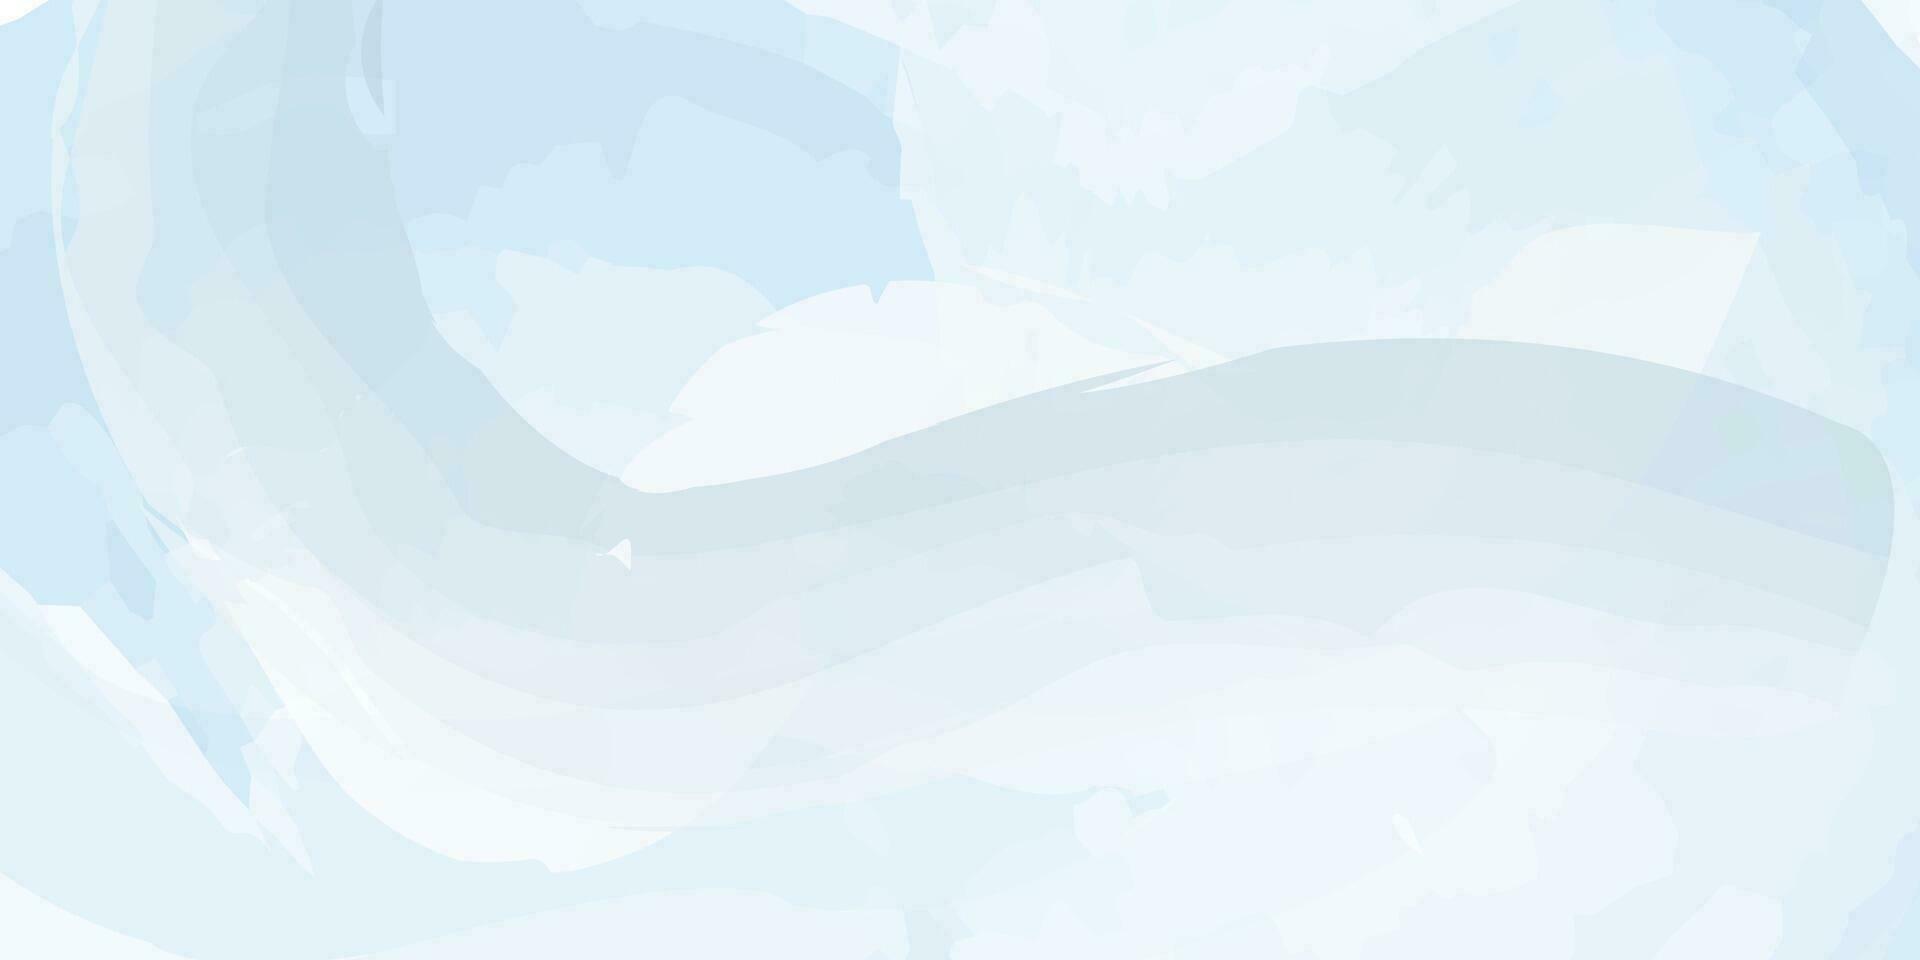 Vektor Blau Aquarell Hintergrund. Hintergrund zum Sozial Netzwerke, Websites und Design .